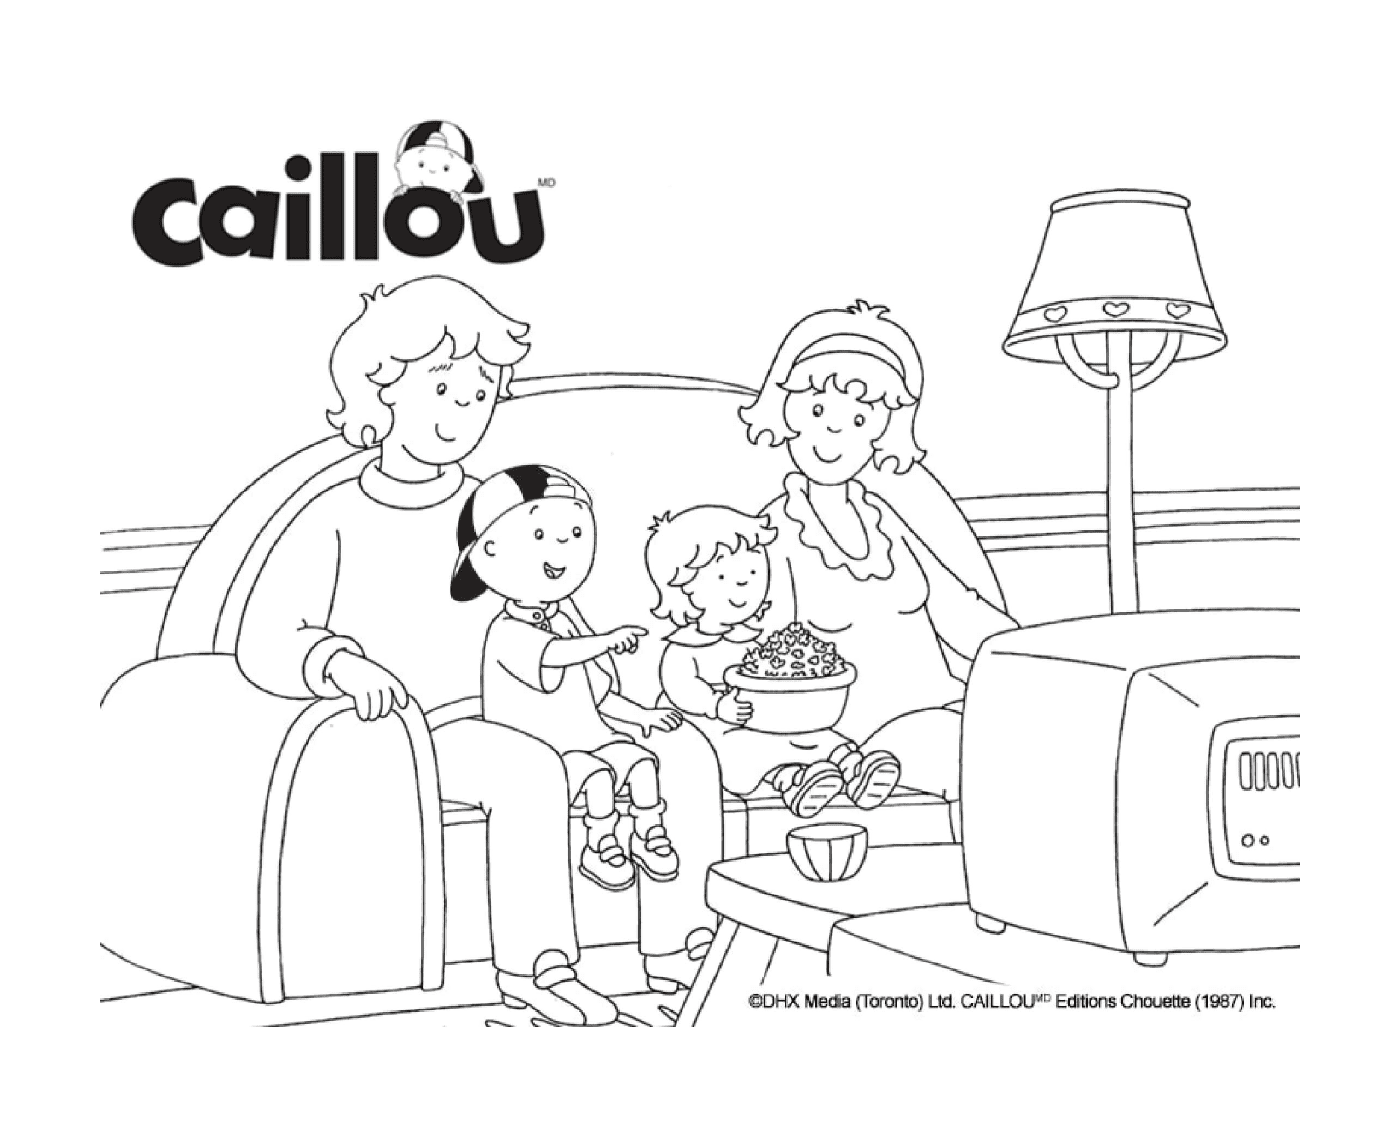  La famiglia Caillou sta guardando un film in televisione 